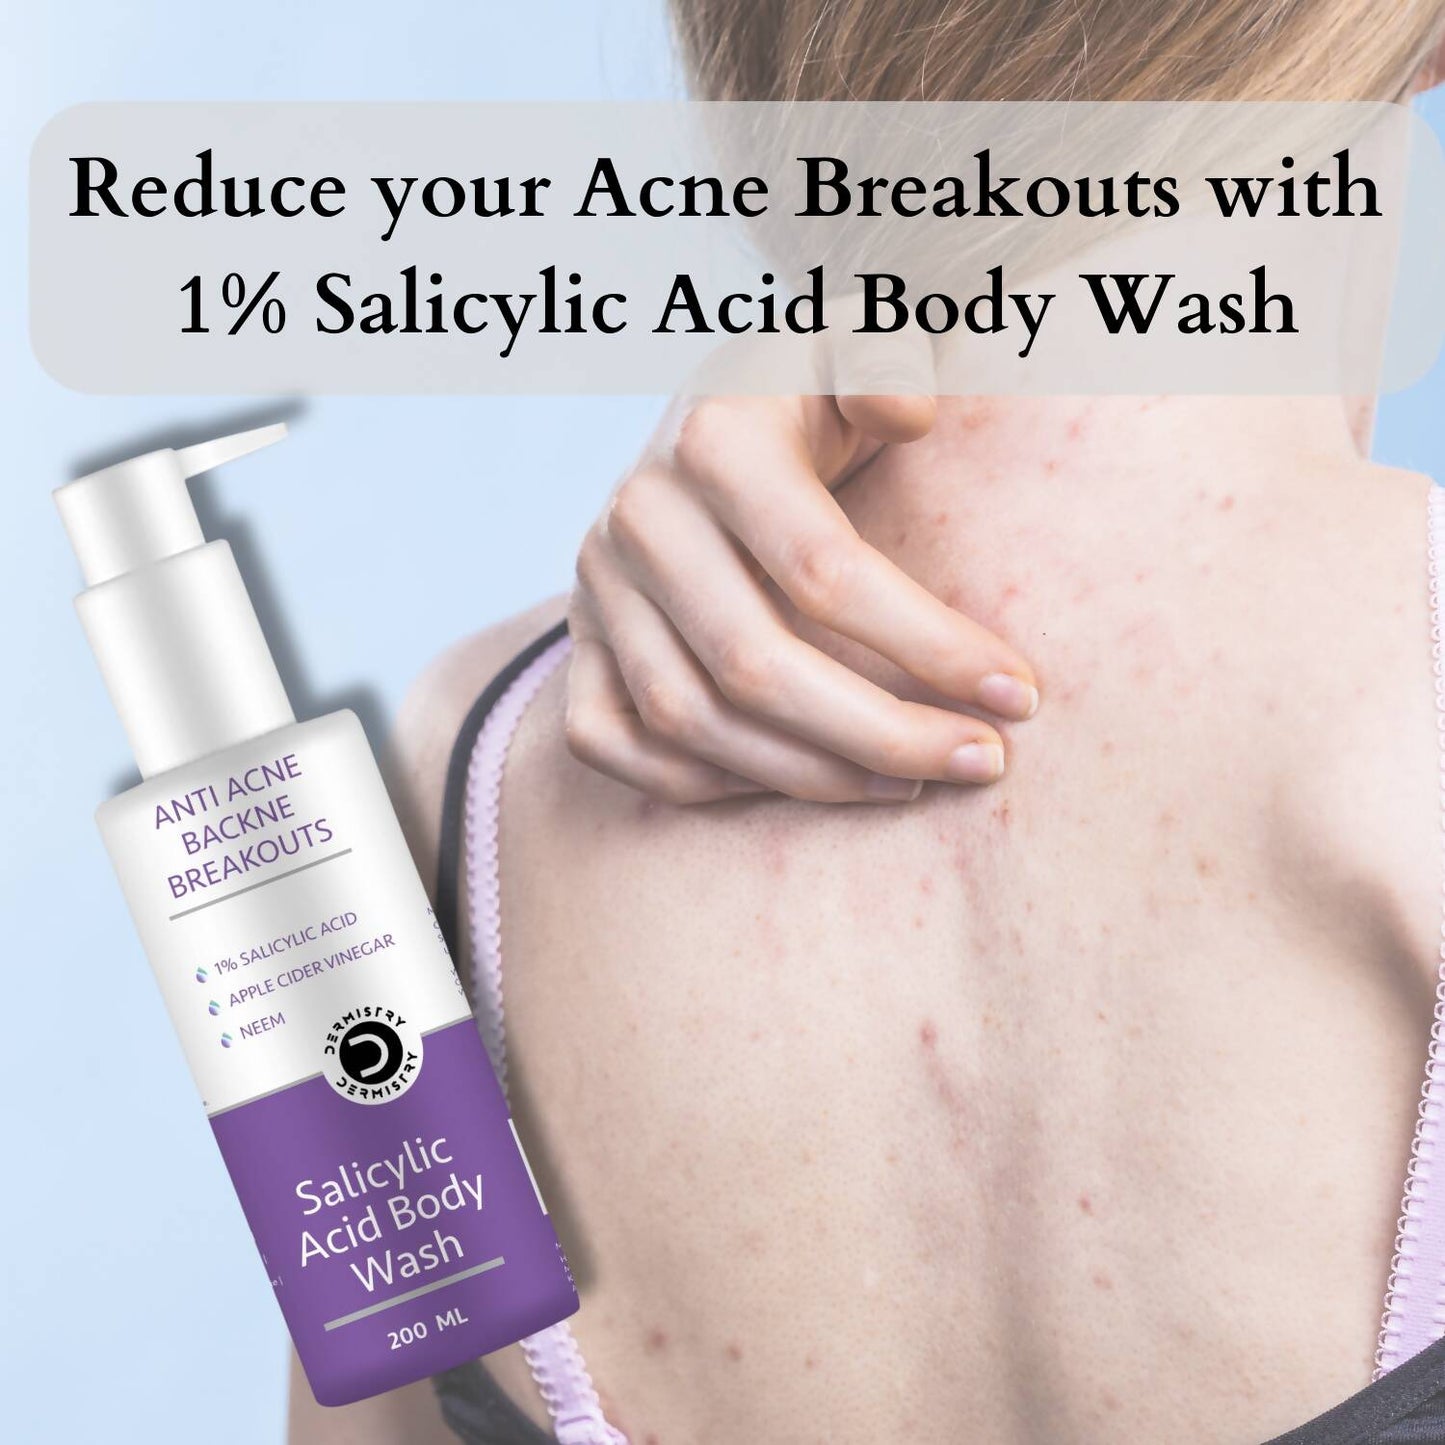 Dermistry Salicylic Acid Body Wash & Face Serum